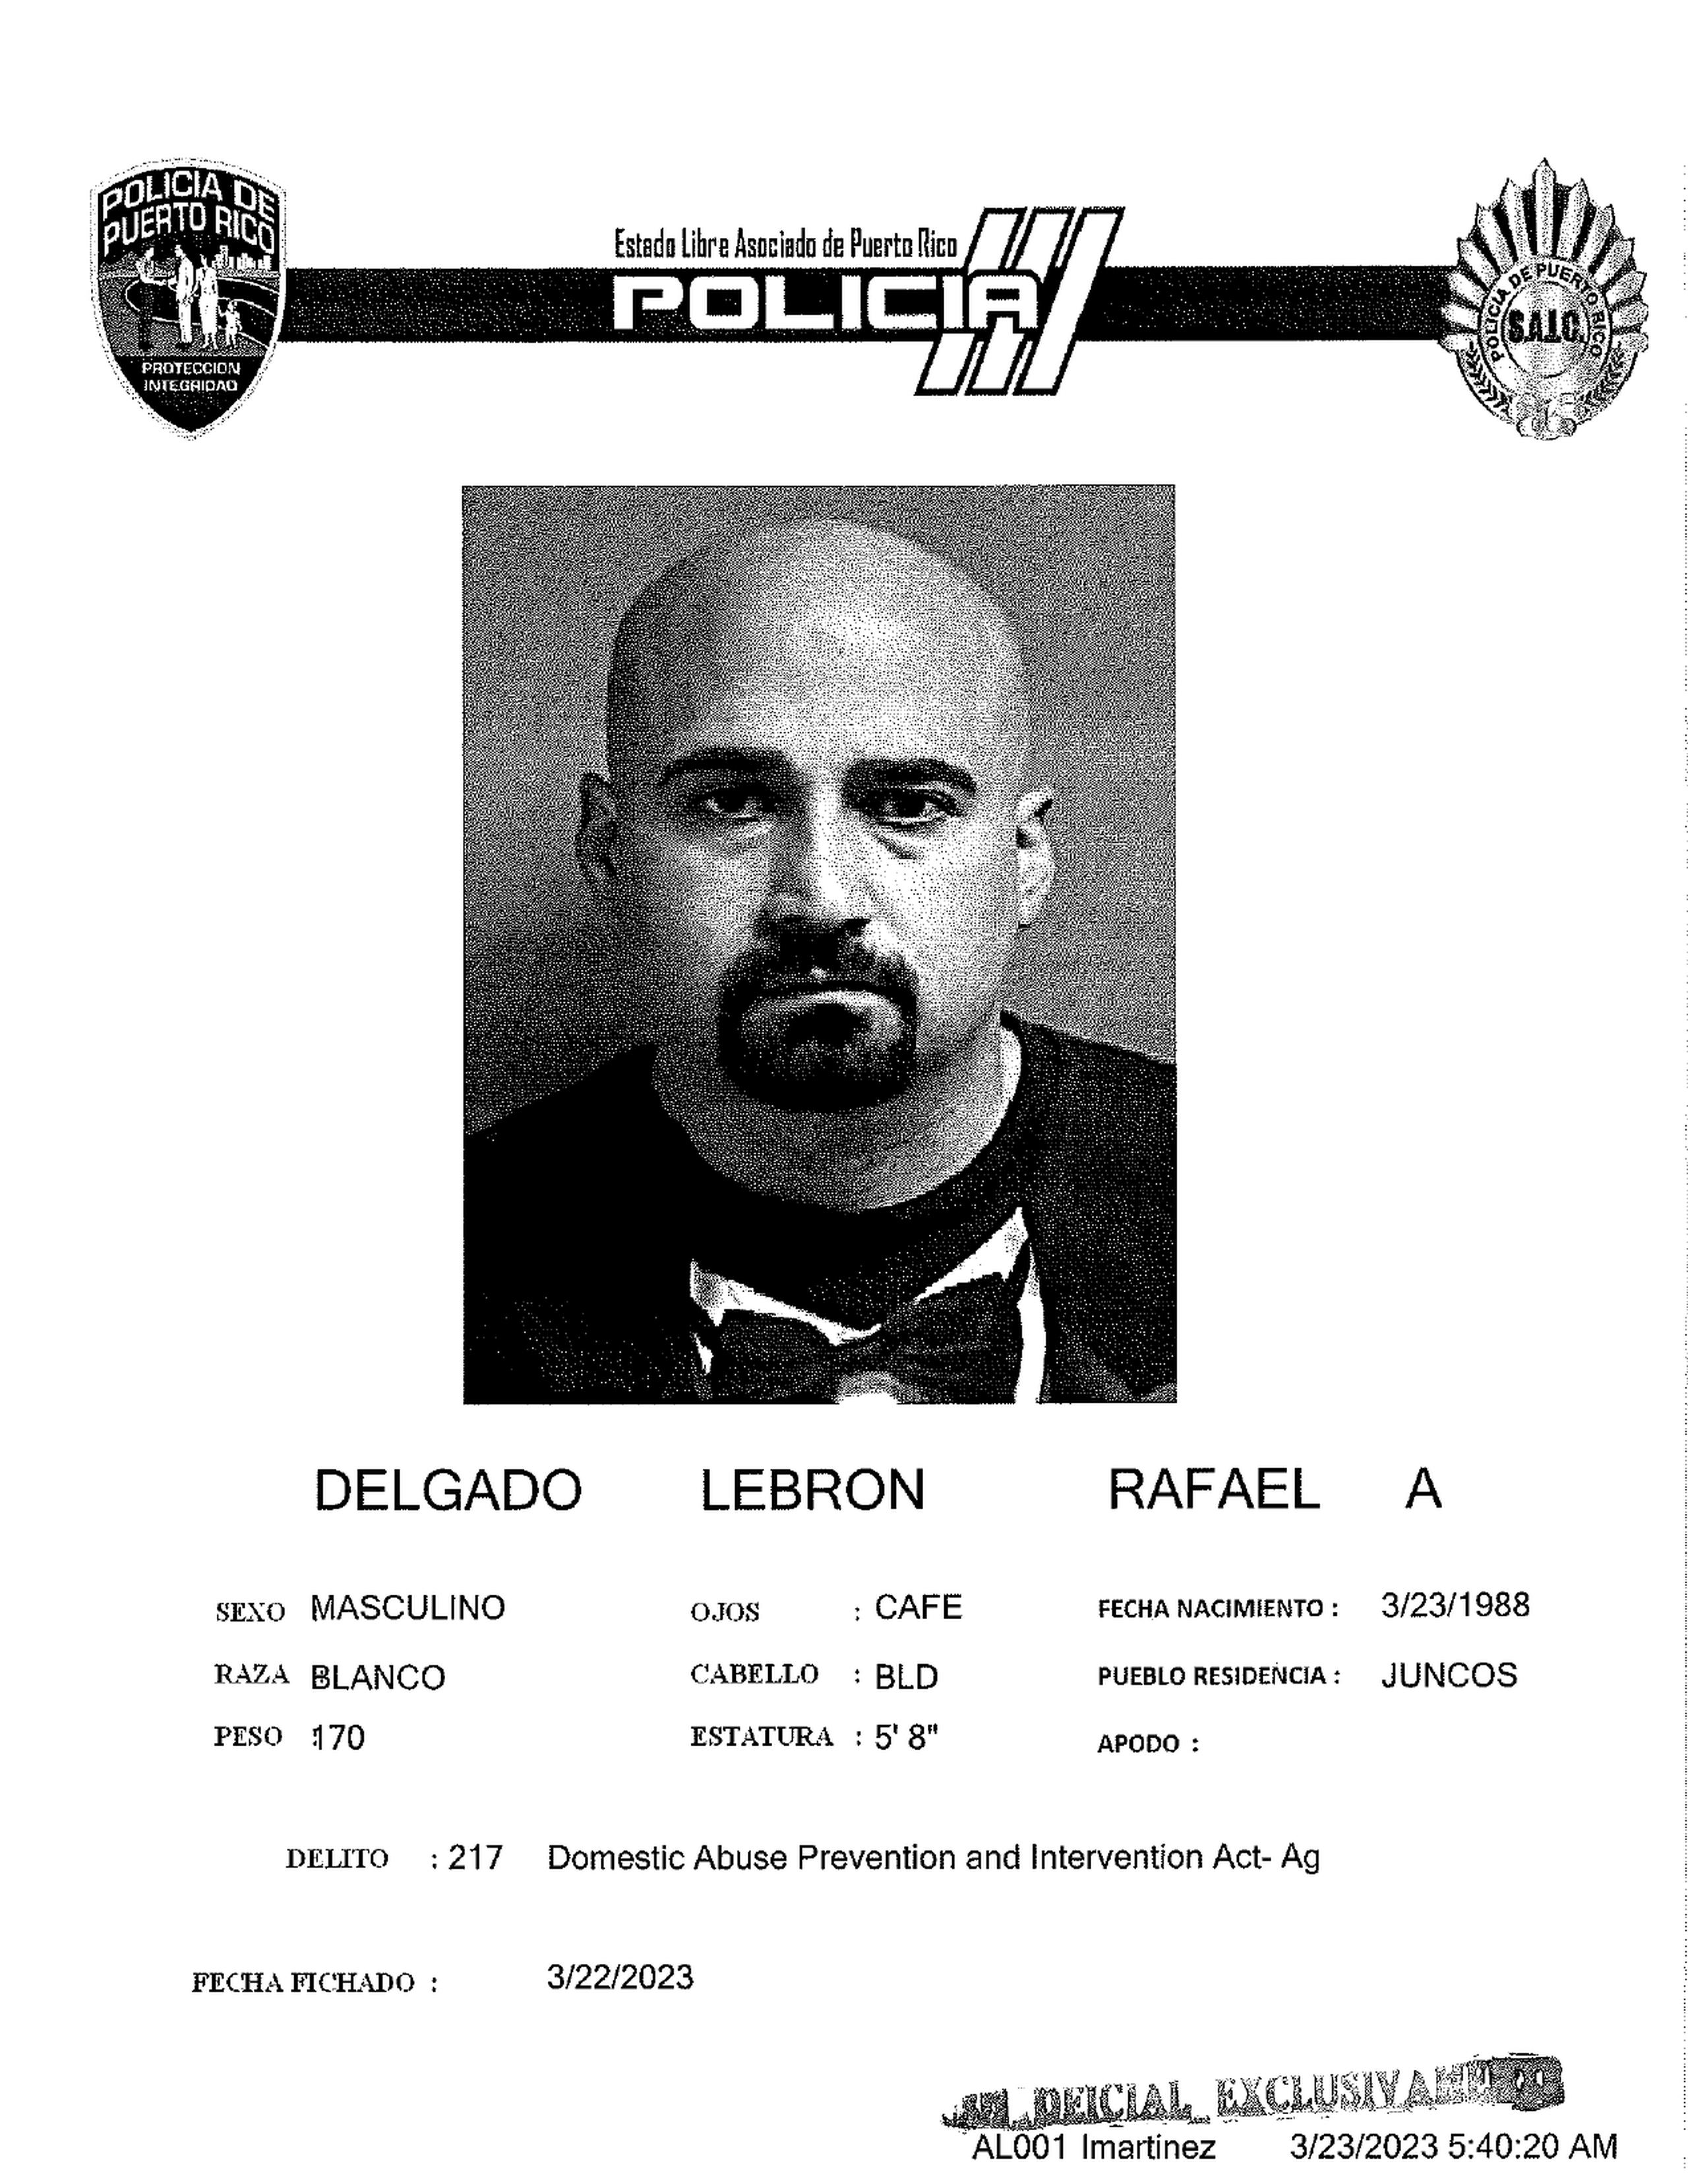 Rafael Delgado Lebrón